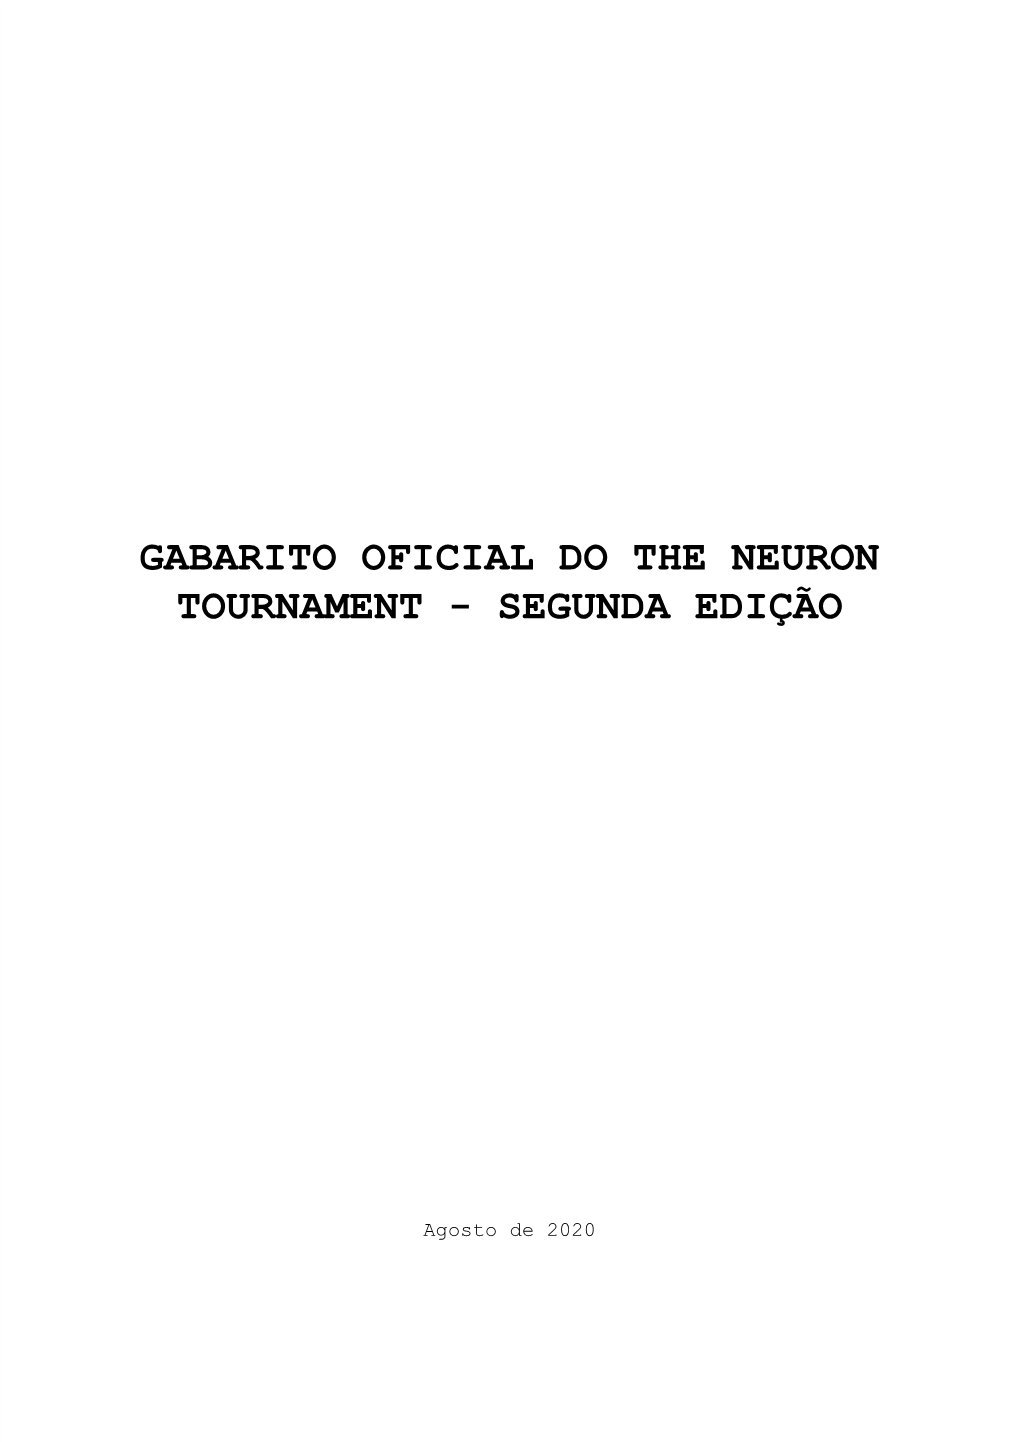 Gabarito Oficial Do the Neuron Tournament - Segunda Edição